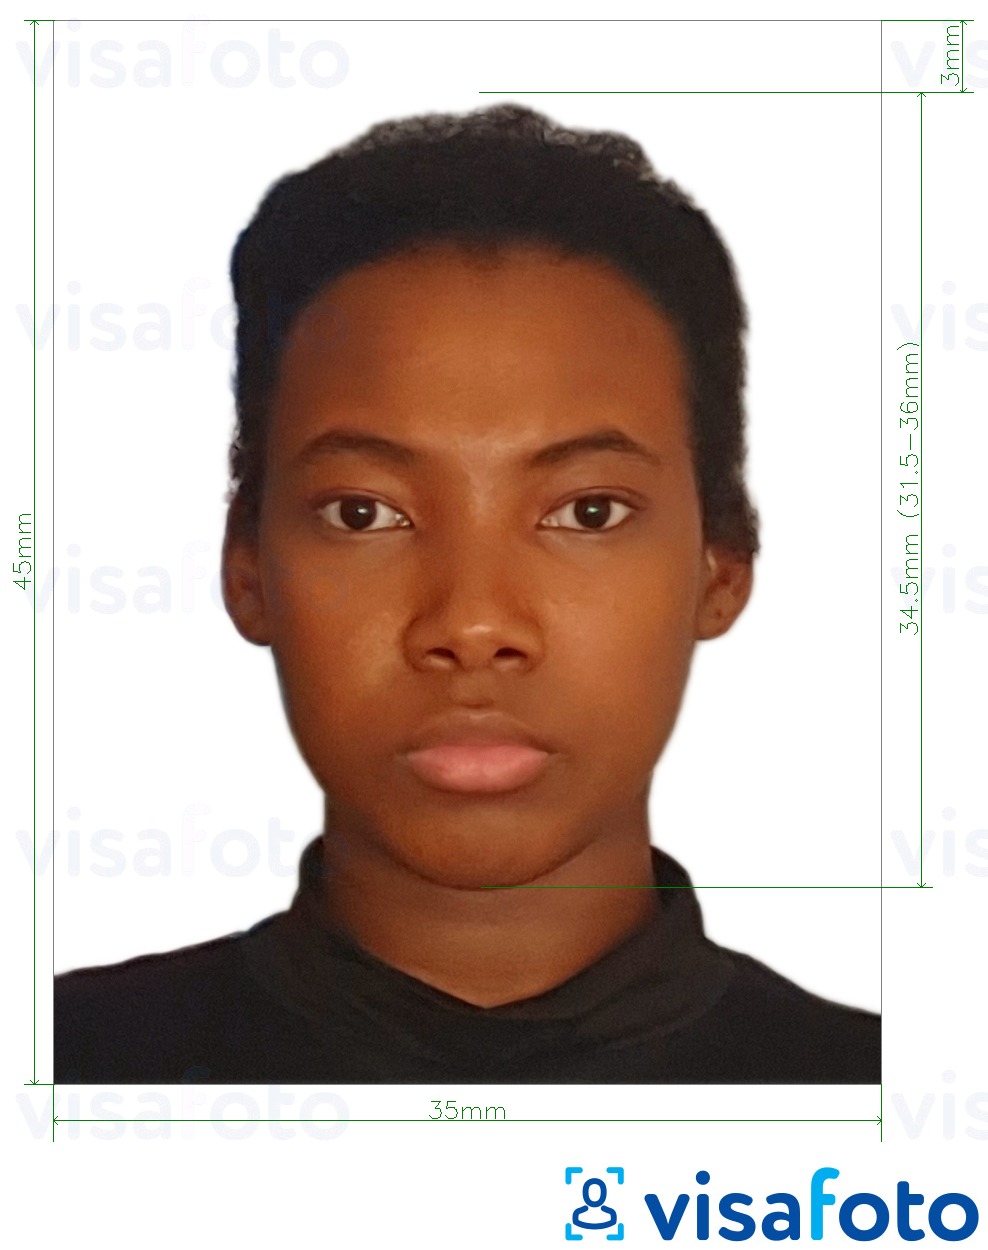 نمونه ی یک عکس برای گذرنامه غنا 3.5x4.5 سانتی متر (35x45 میلی متر) با مشخصات دقیق